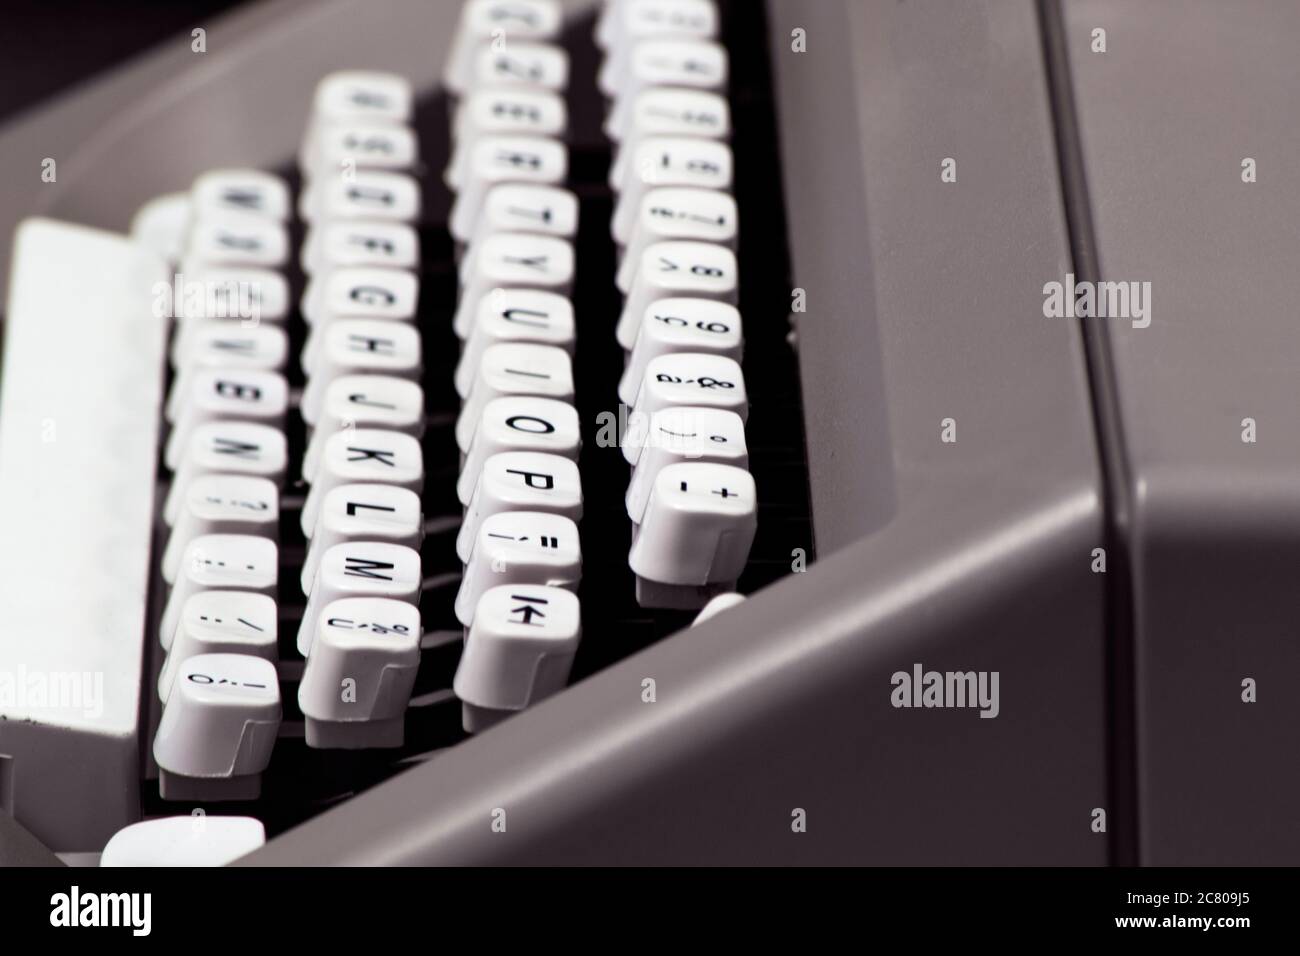 clavier d'une ancienne machine à écrire manuelle : touches blanches et lettres noires Banque D'Images